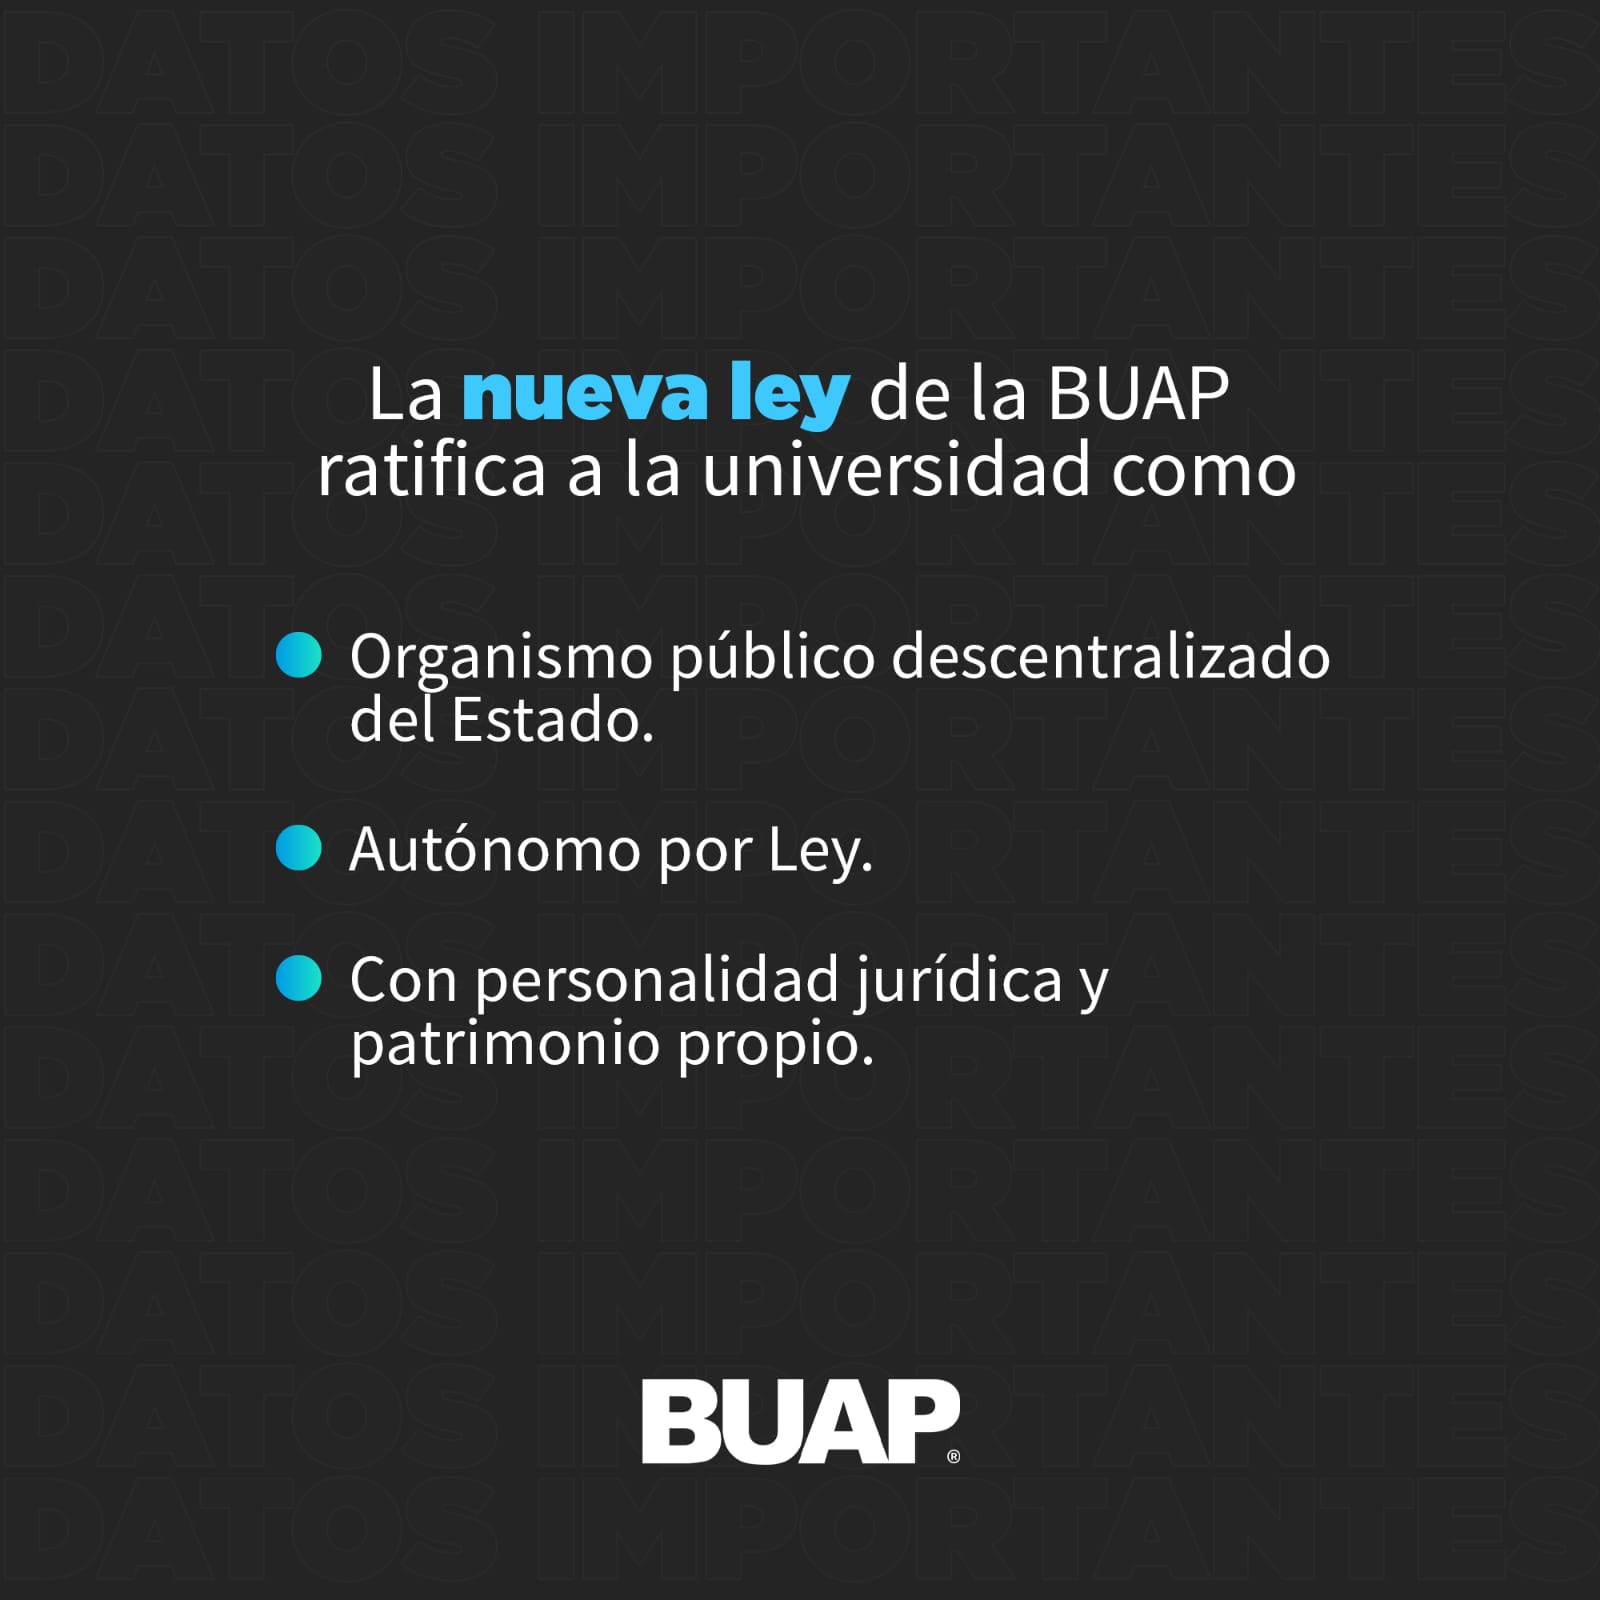 Nuevo marco jurídico ratifica autonomía de la BUAP